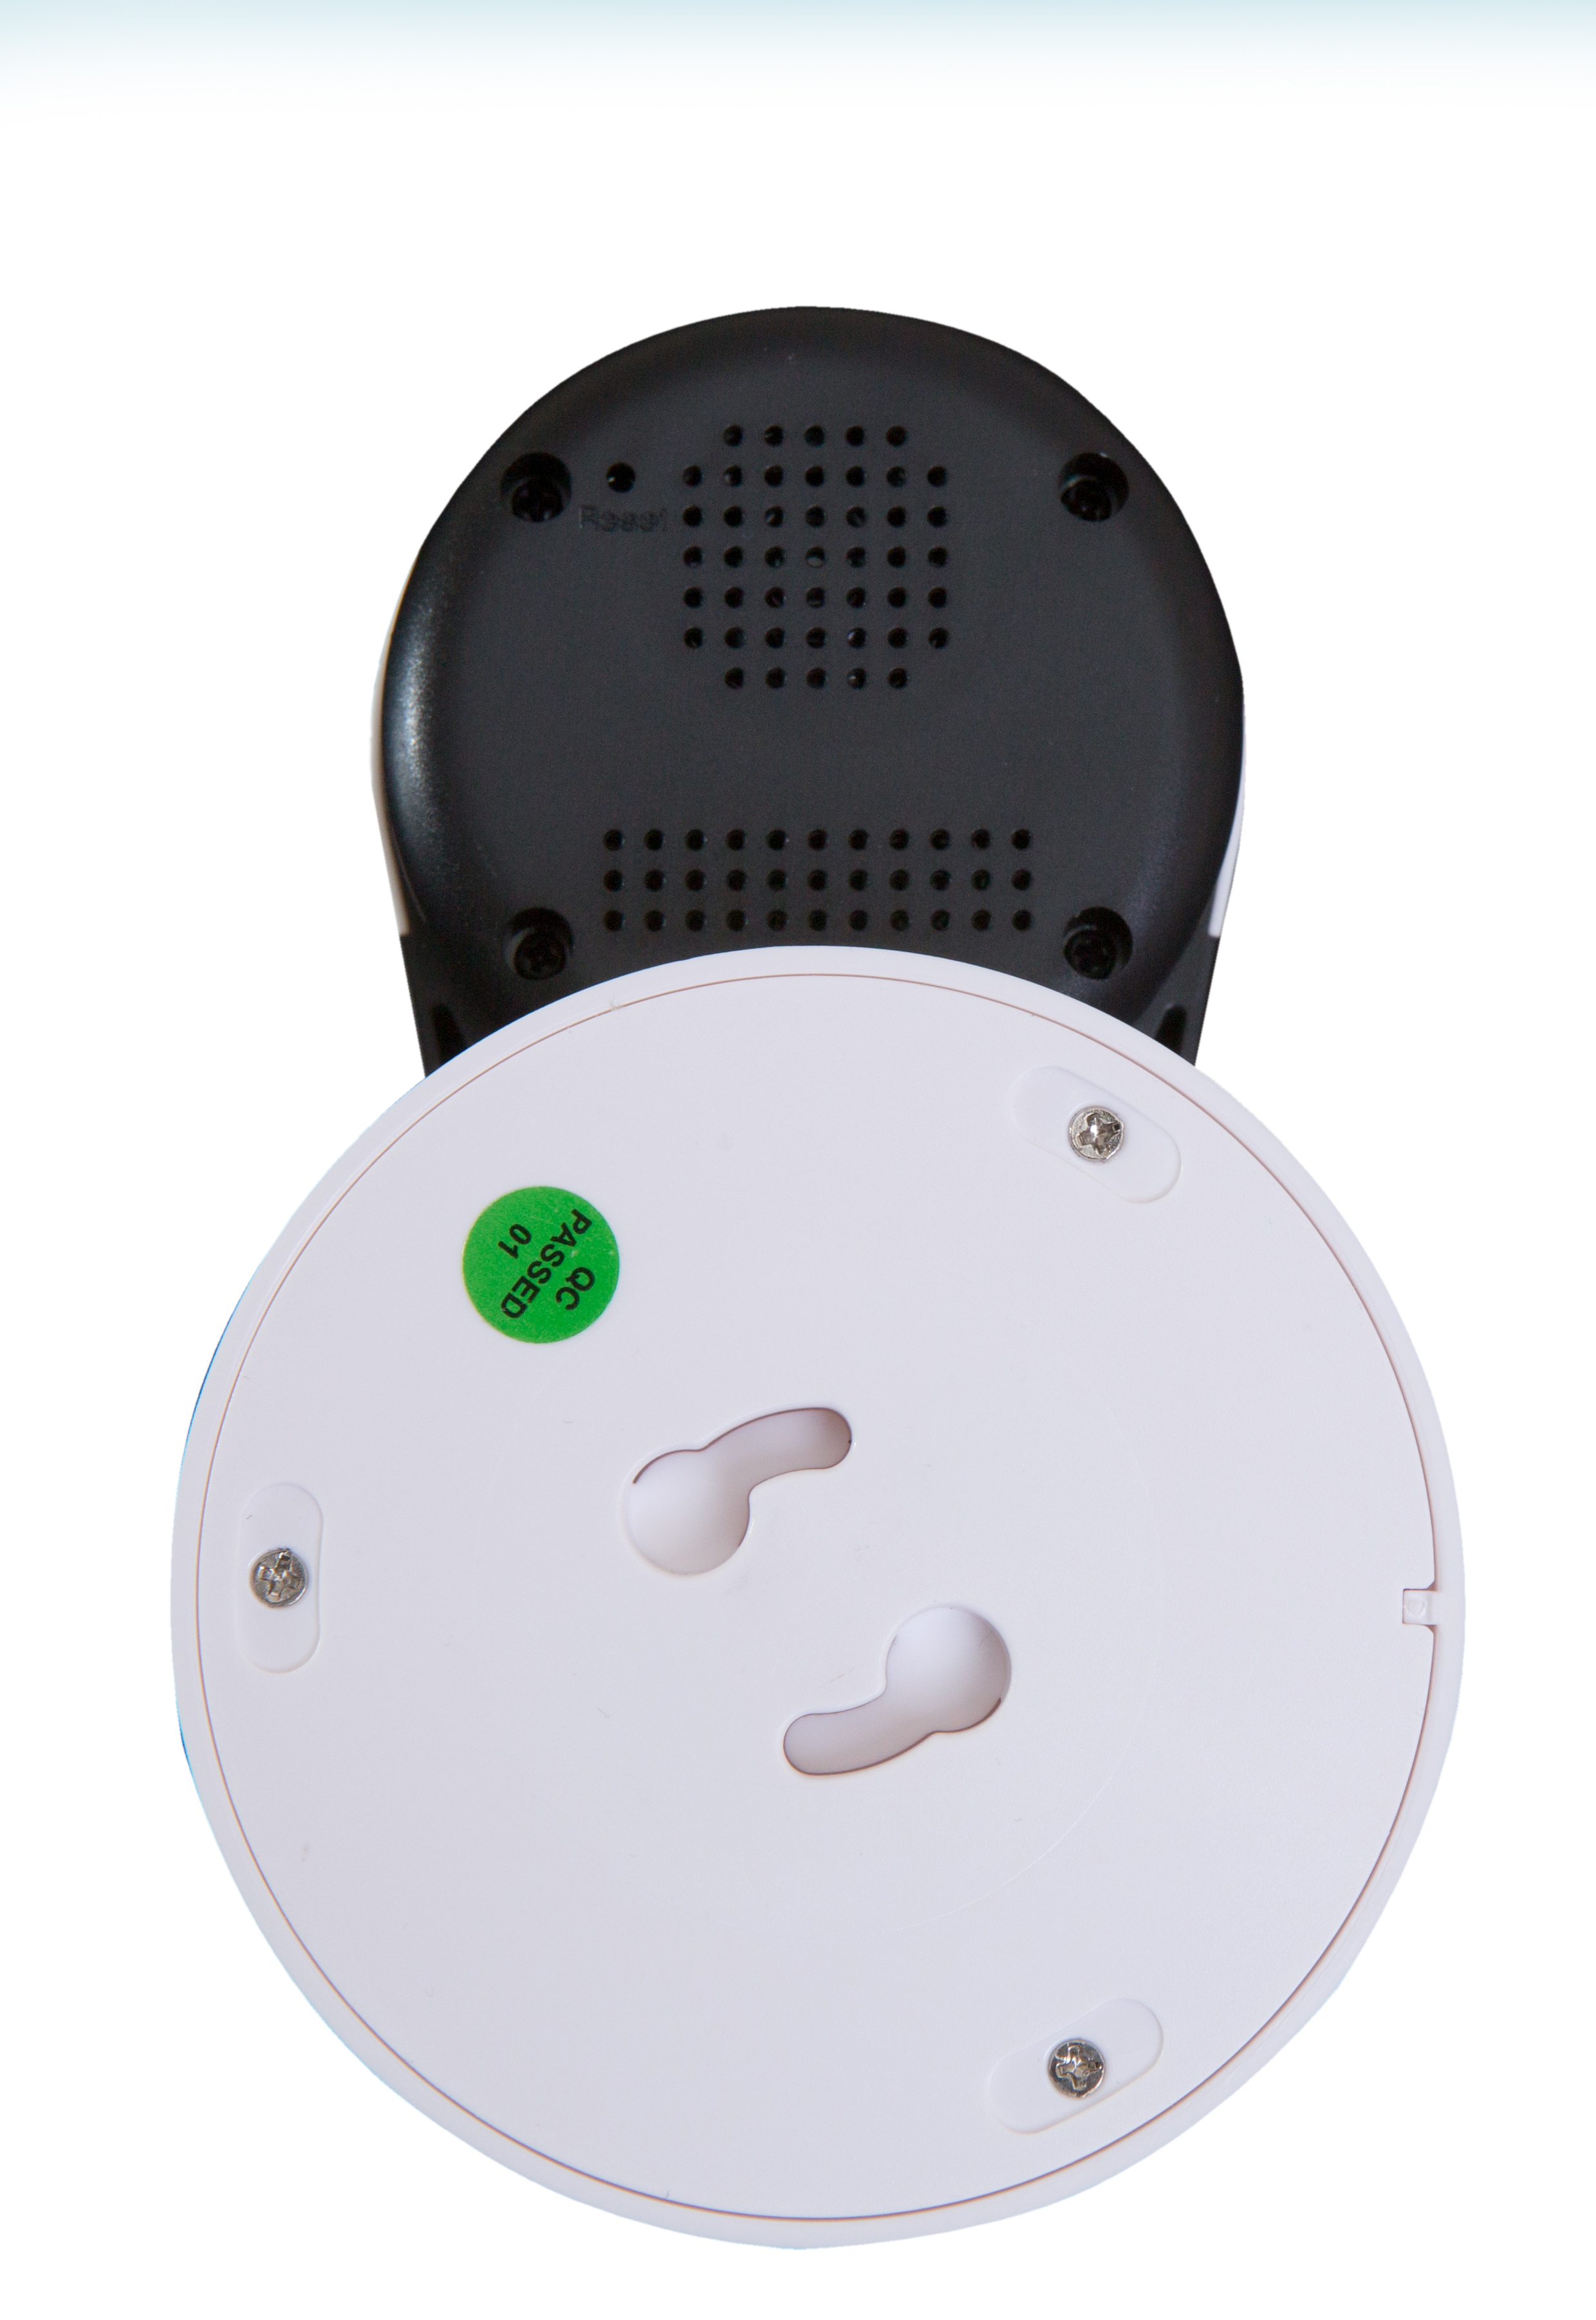 Все Ростелеком Switcam-HS303 Wi-Fi IP видеокамера видеонаблюдения в магазине Vidos Group